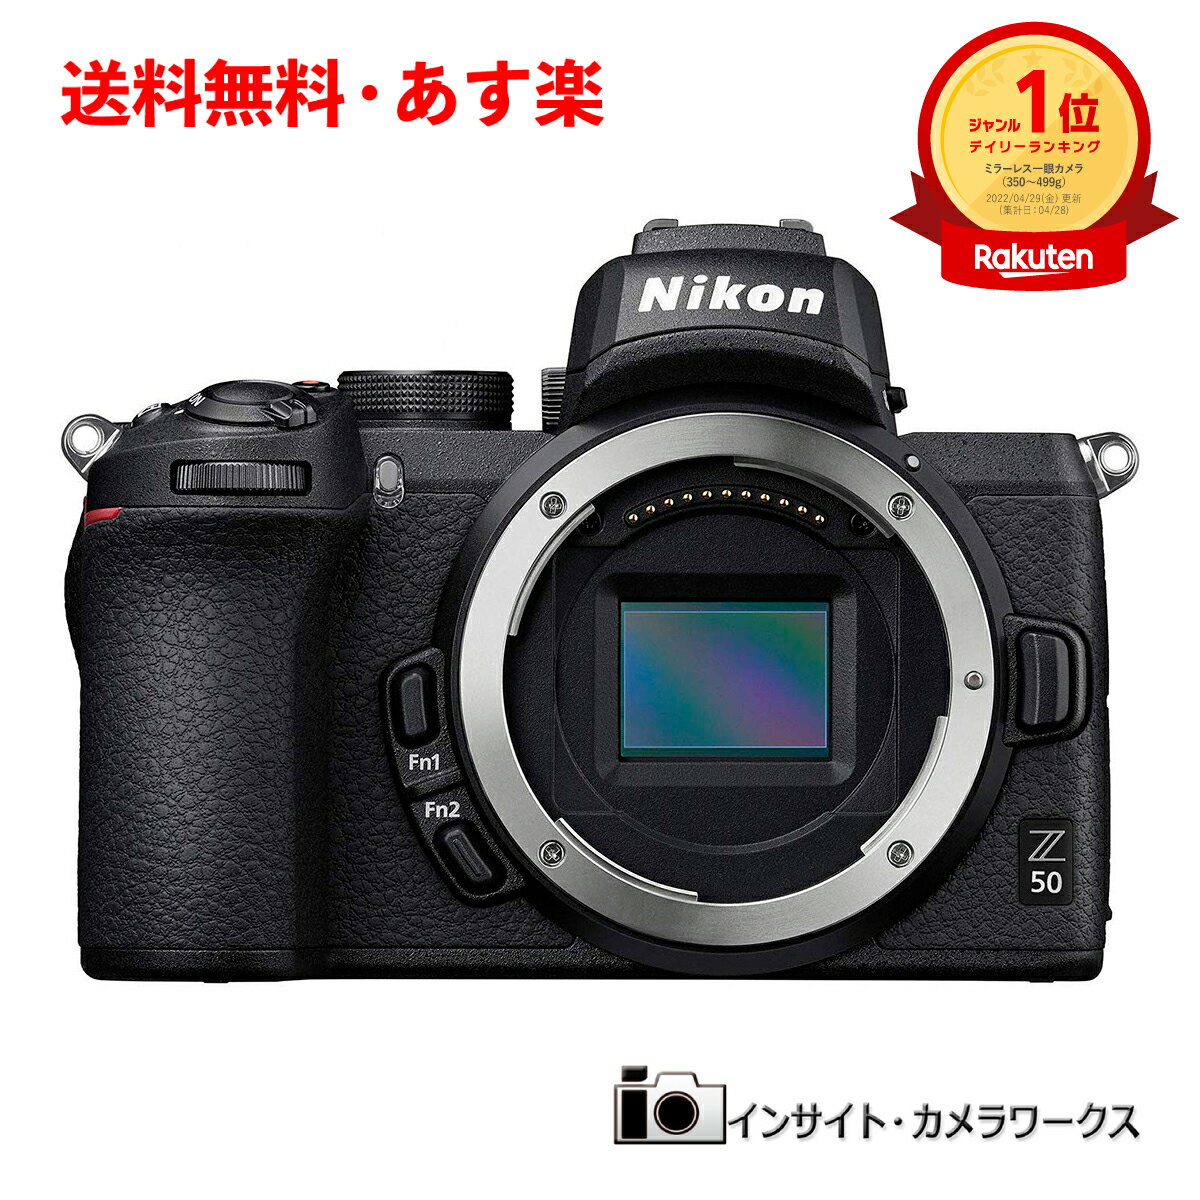 ニコン Z50 ボディ ミラーレス一眼カメラ Nikon